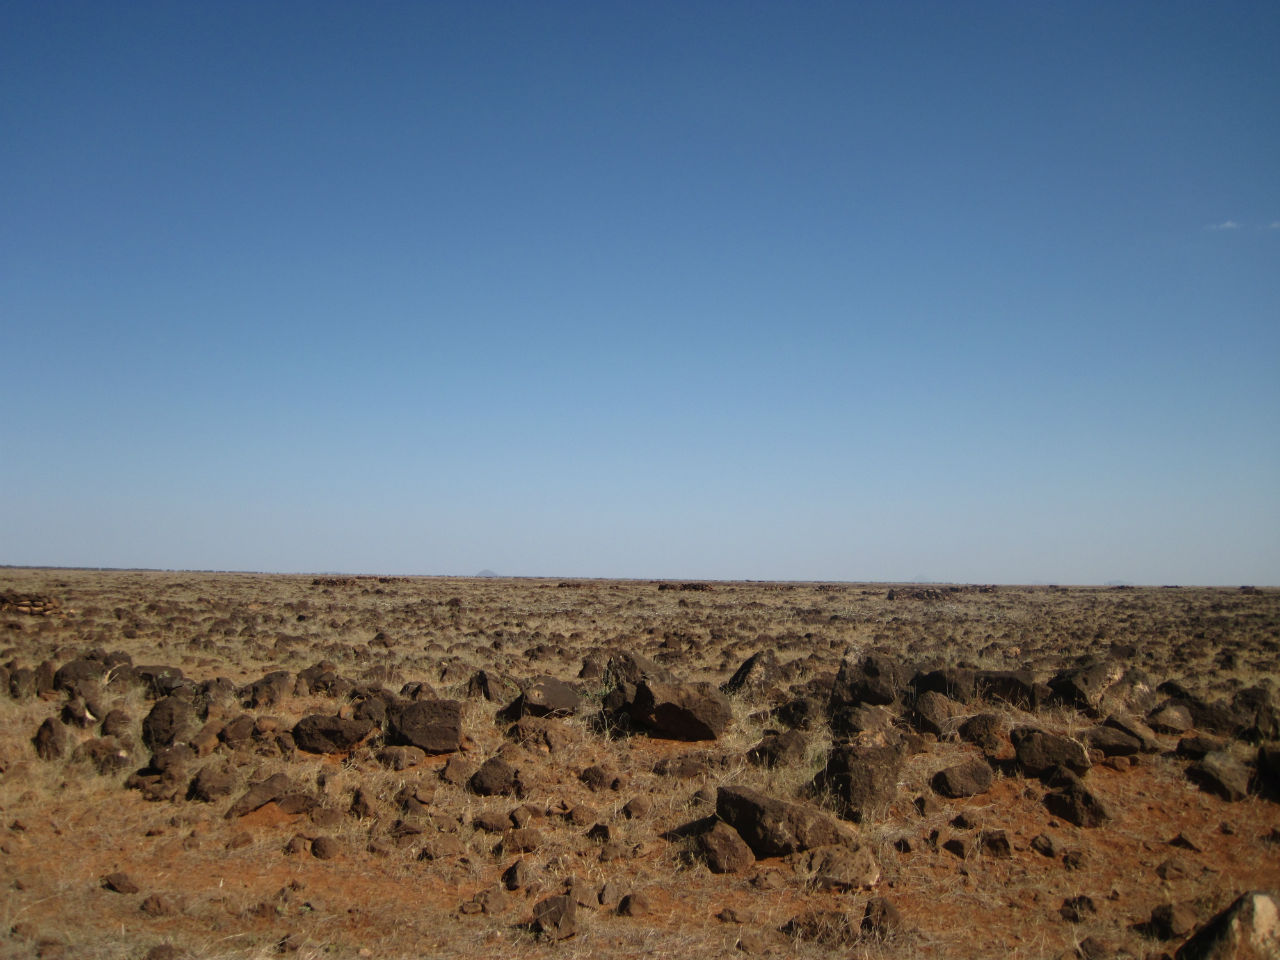 Автостопом через пустыню из Кении в Эфиопию Кения